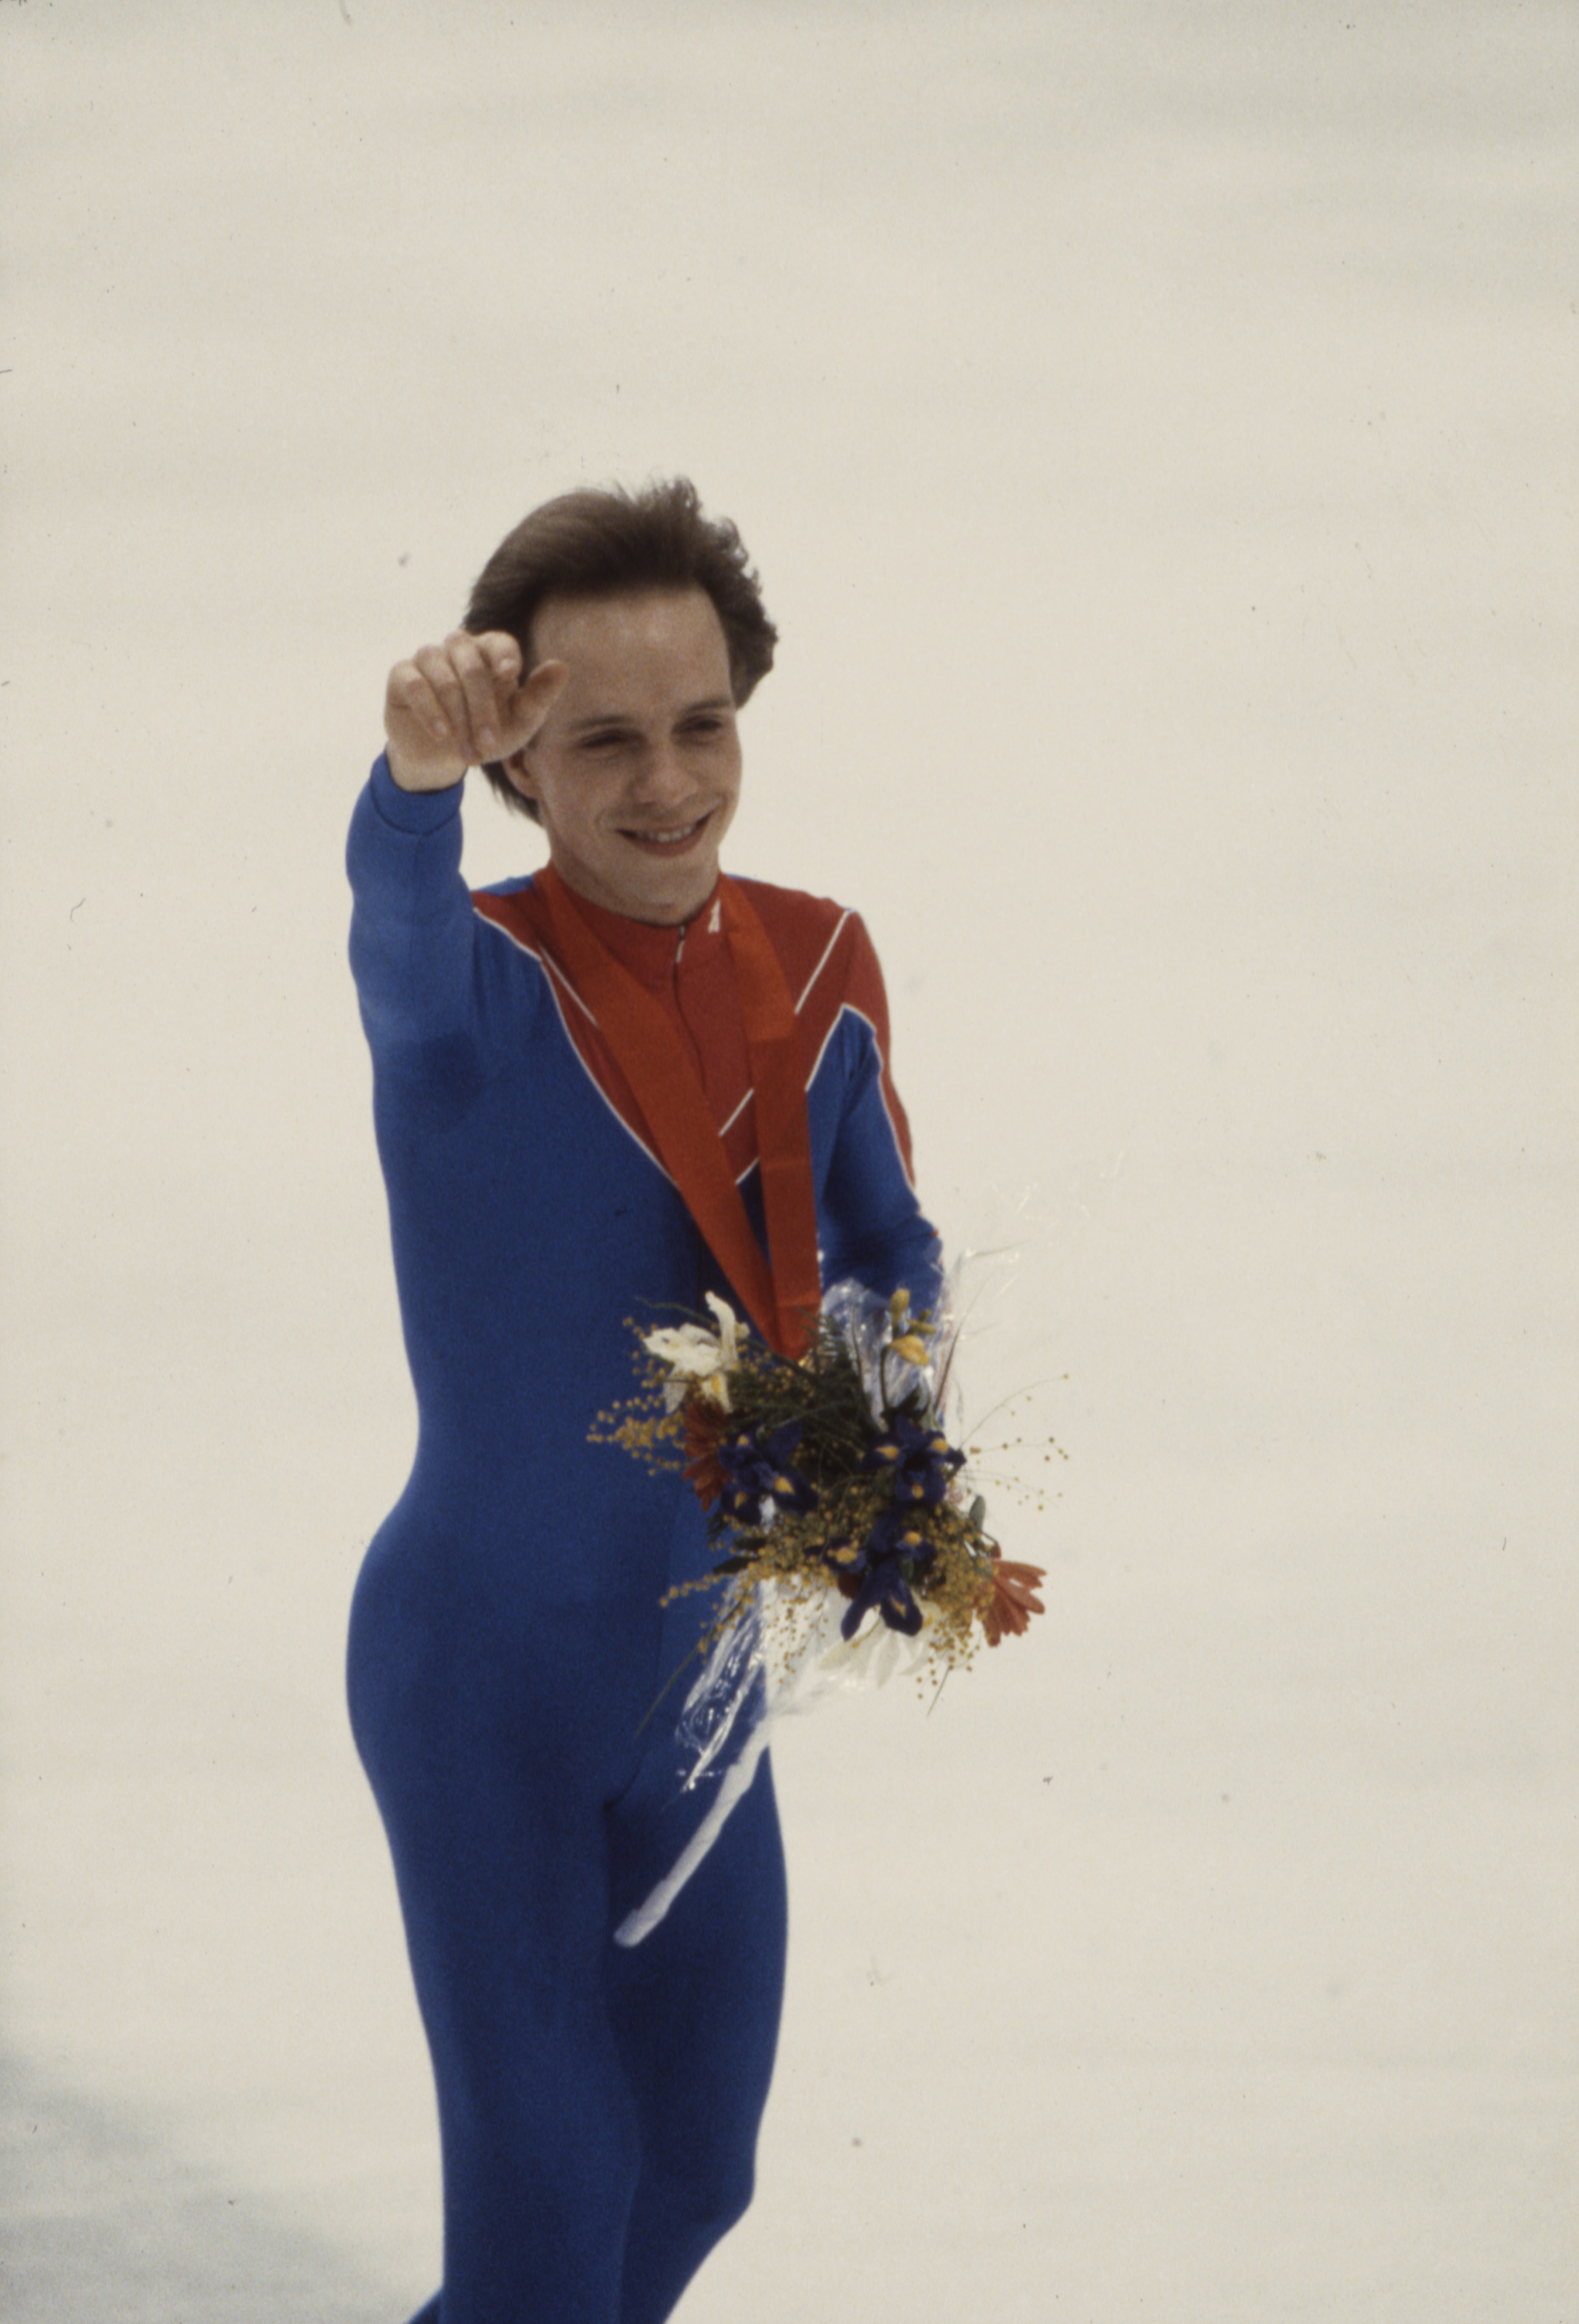 Scott Hamilton während der Medaillenzeremonie im Eiskunstlauf der Männer bei den Olympischen Winterspielen 1984 am 1. Februar 1984 | Quelle: Getty Images